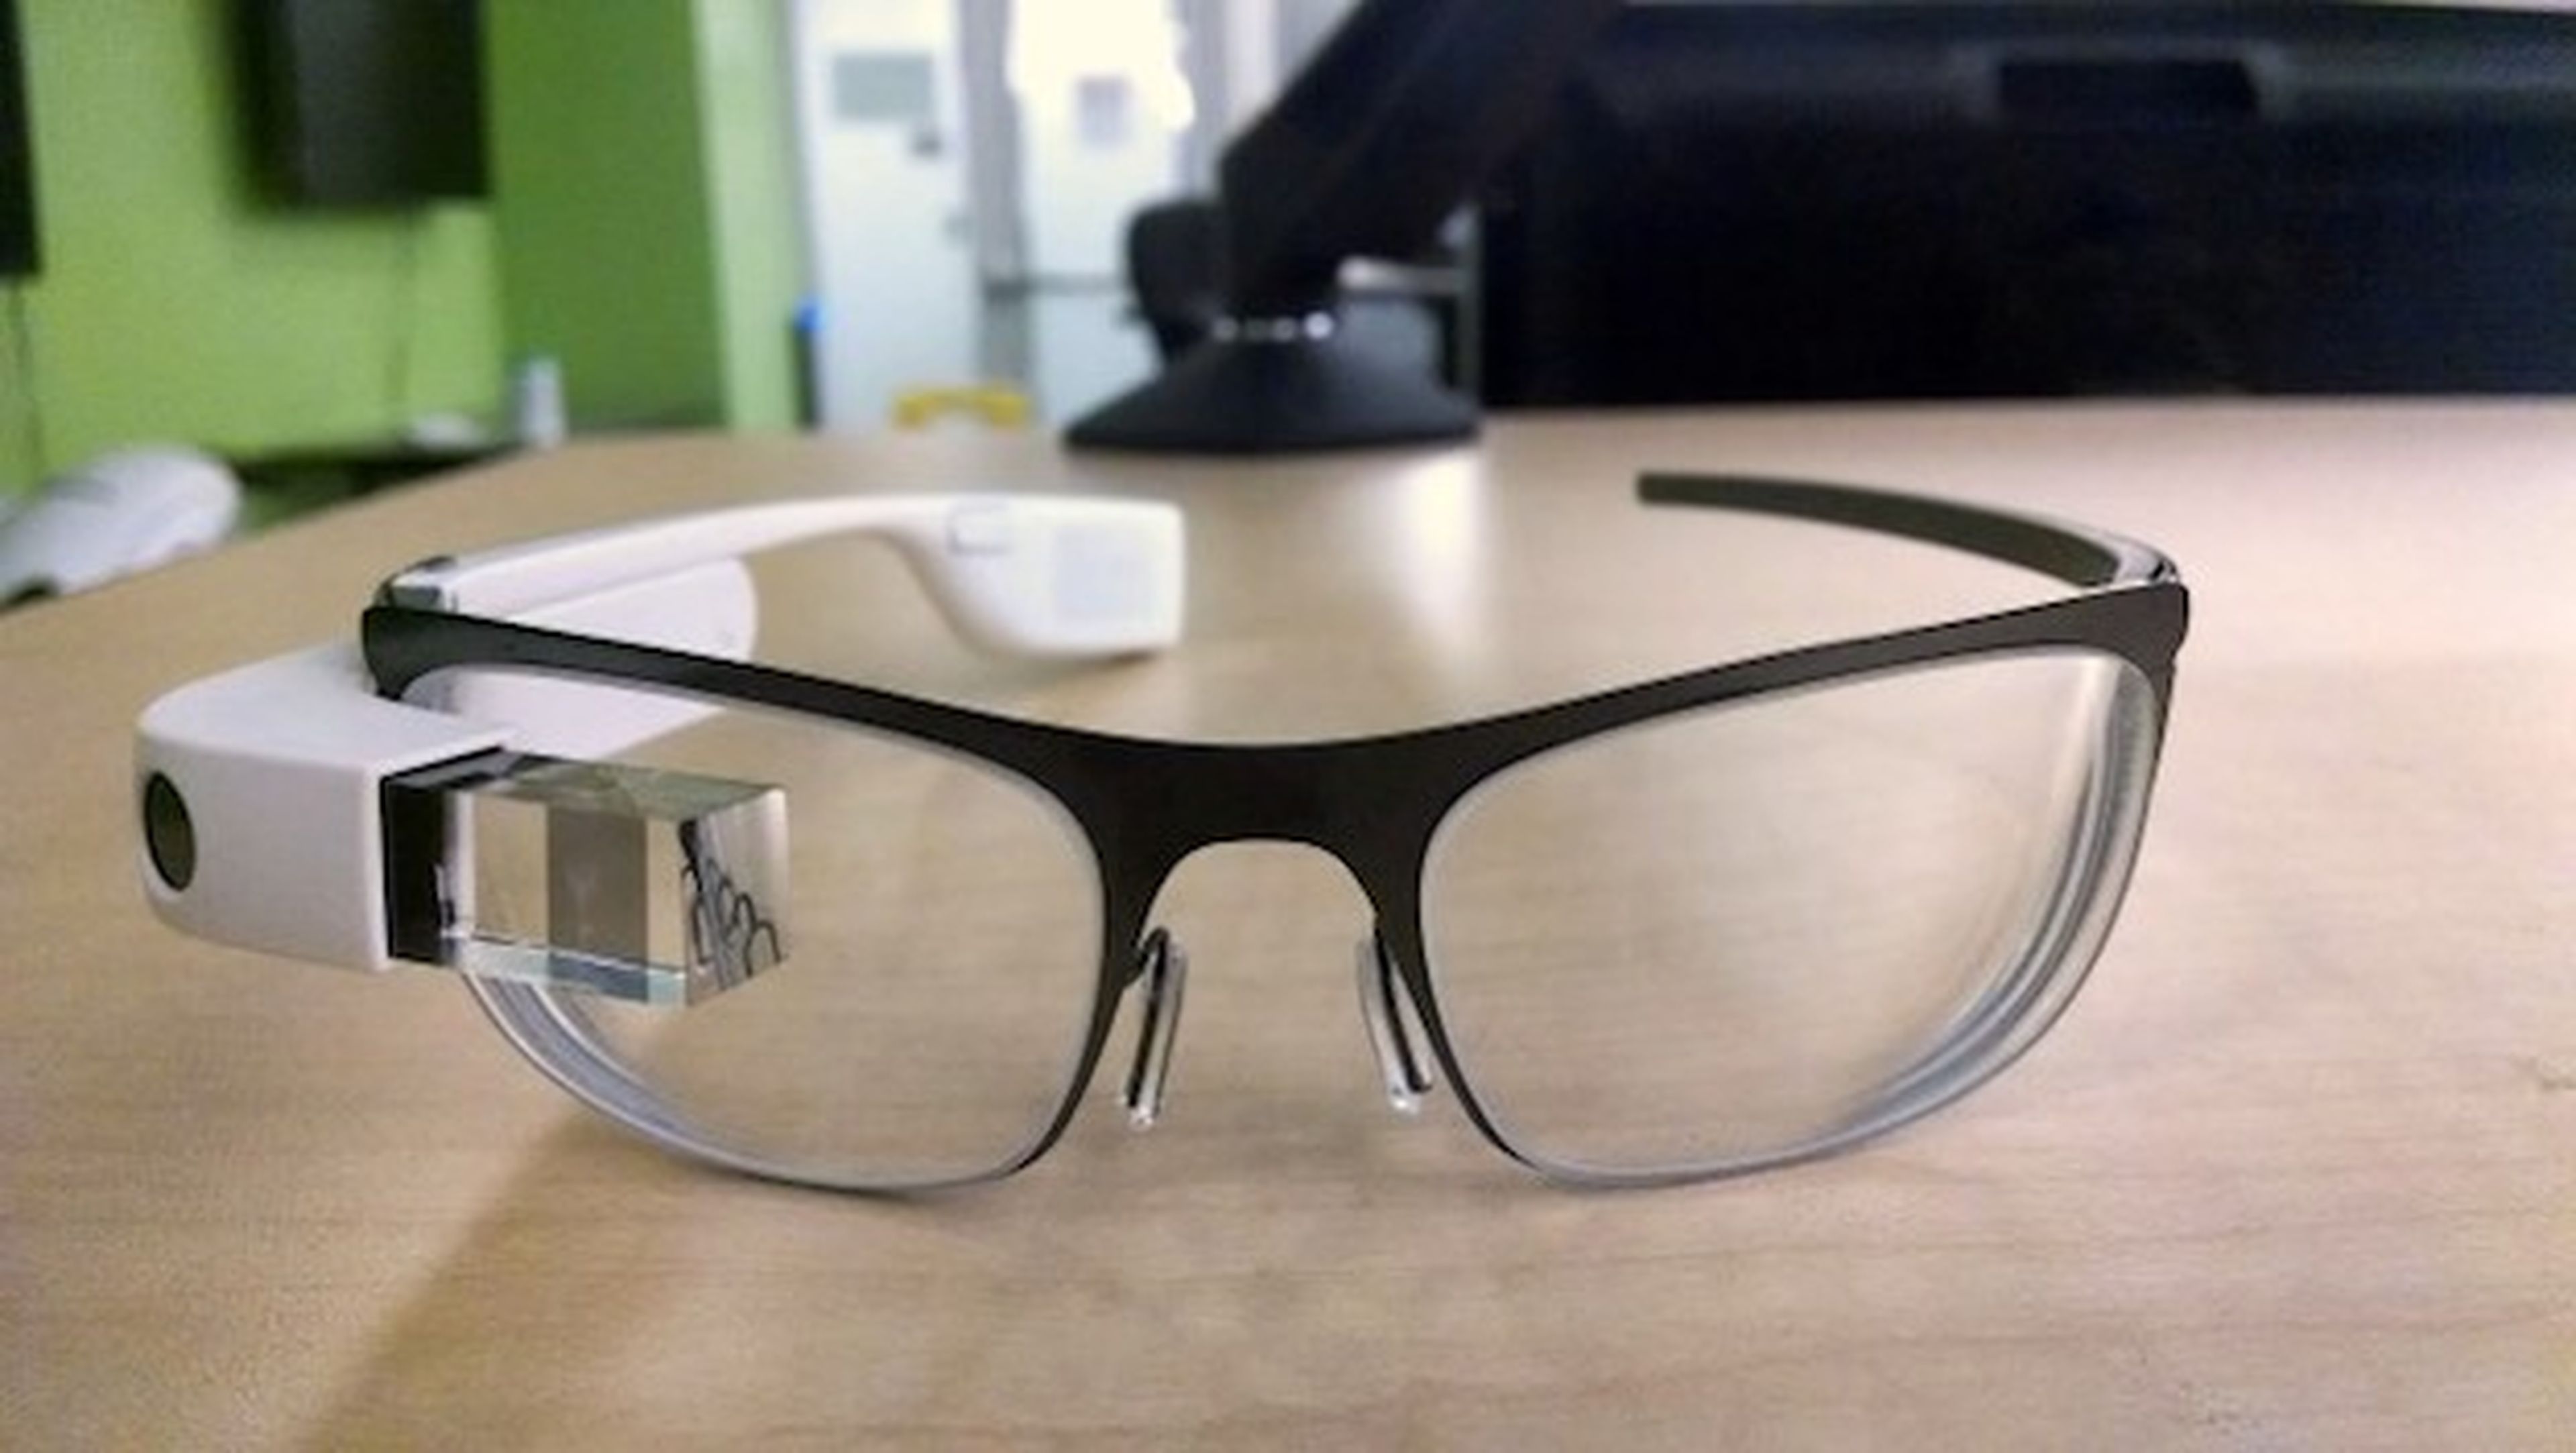 Aparecen imágenes supuestas Google Glass de prescripción